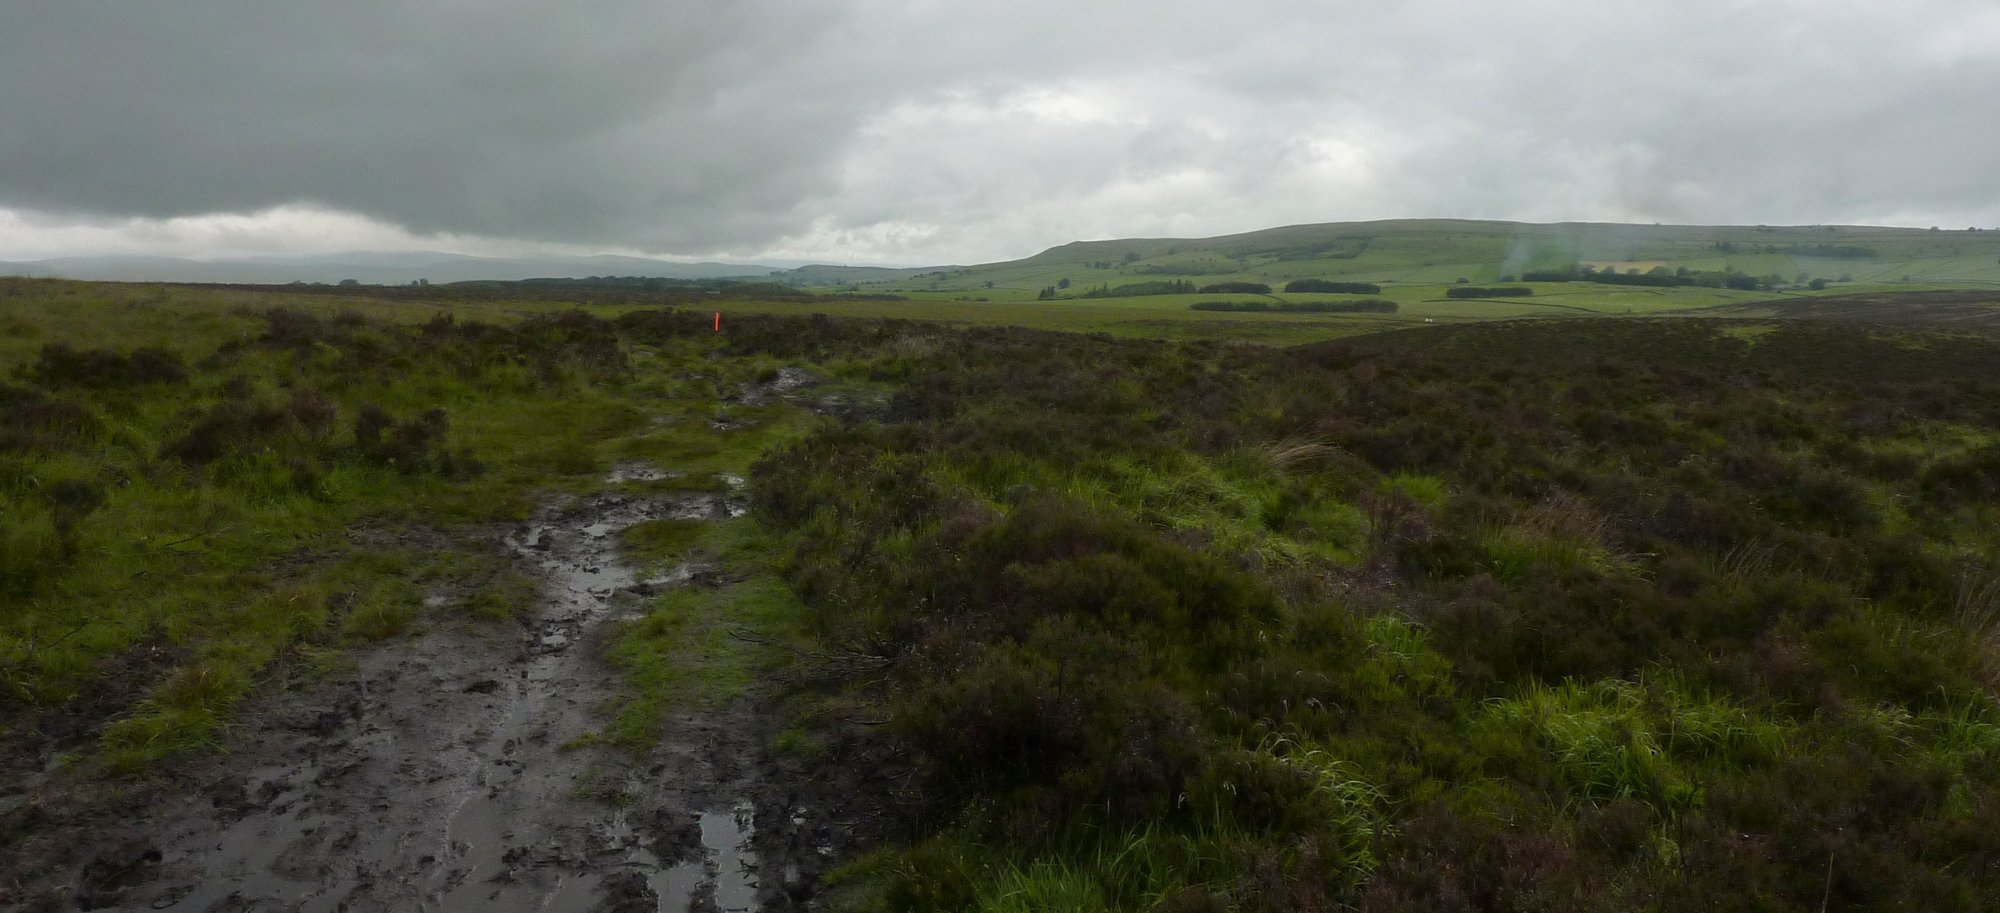 The path around Sunbiggin, somewhat wet and muddy